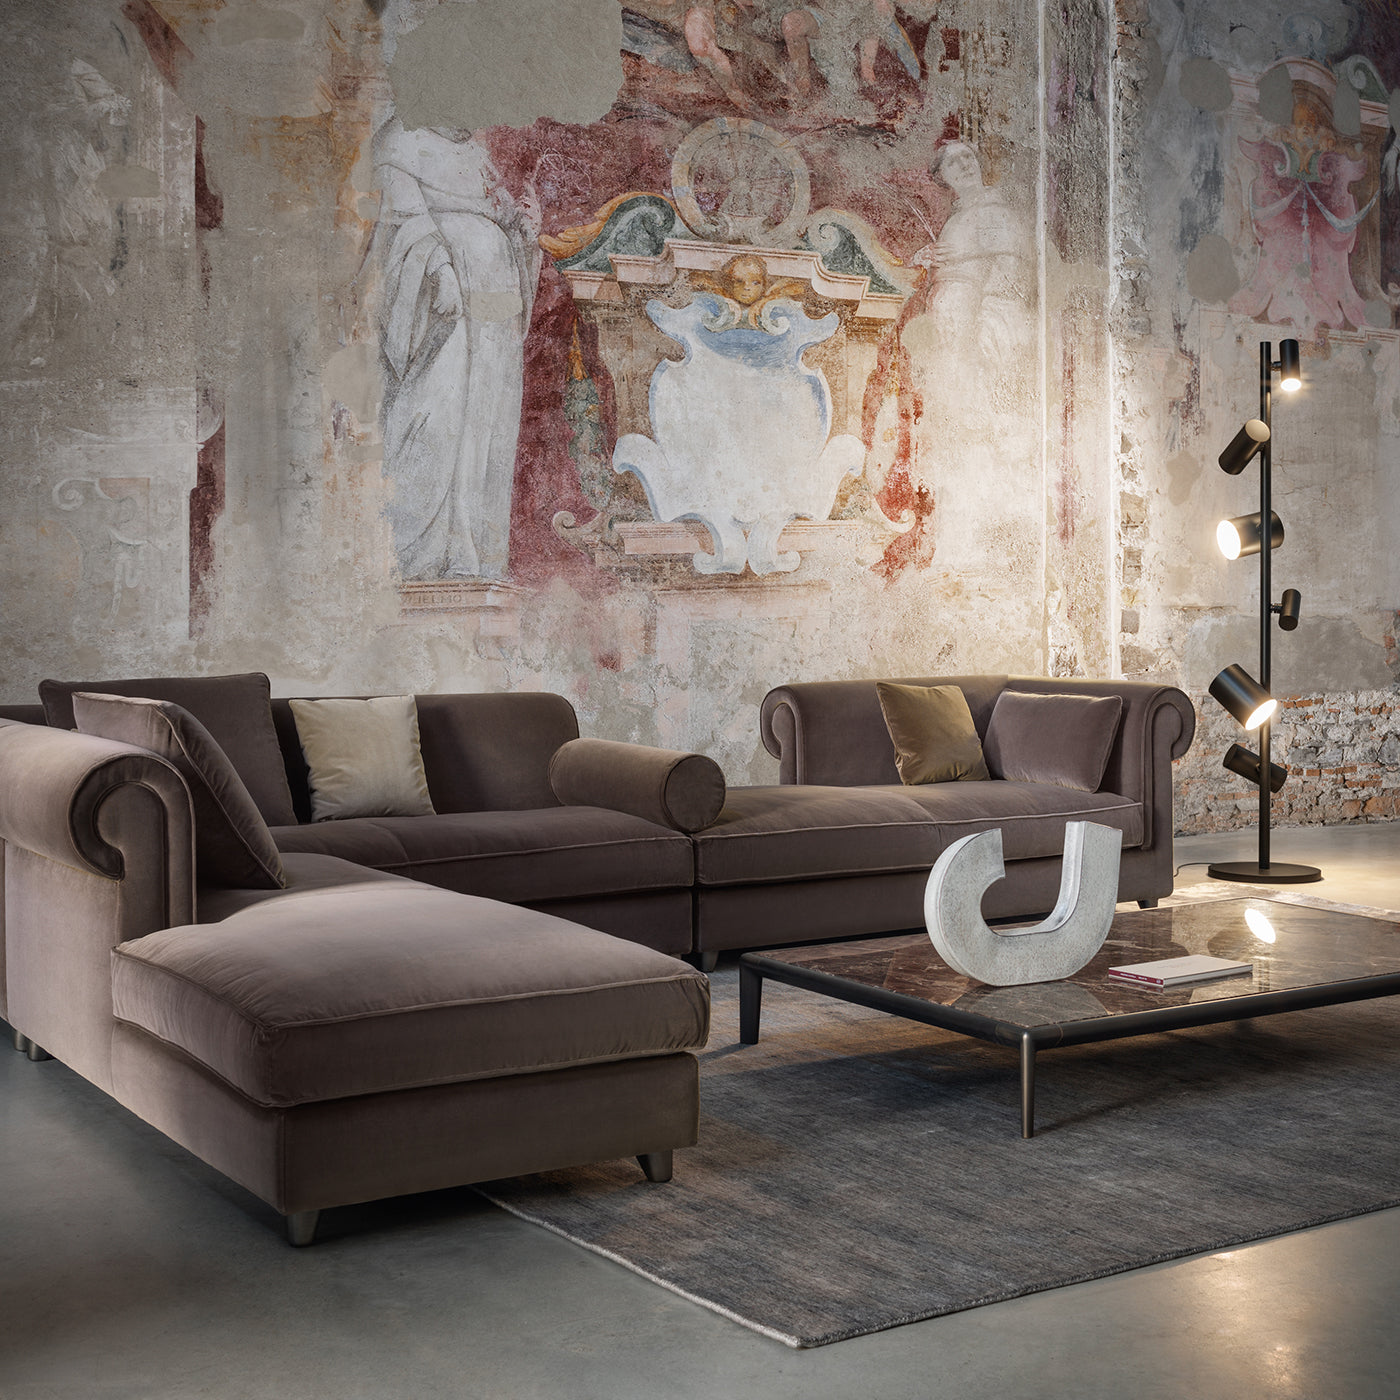 Portofino Gray Sofa by Stefano Giovannoni #1 - Alternative view 4